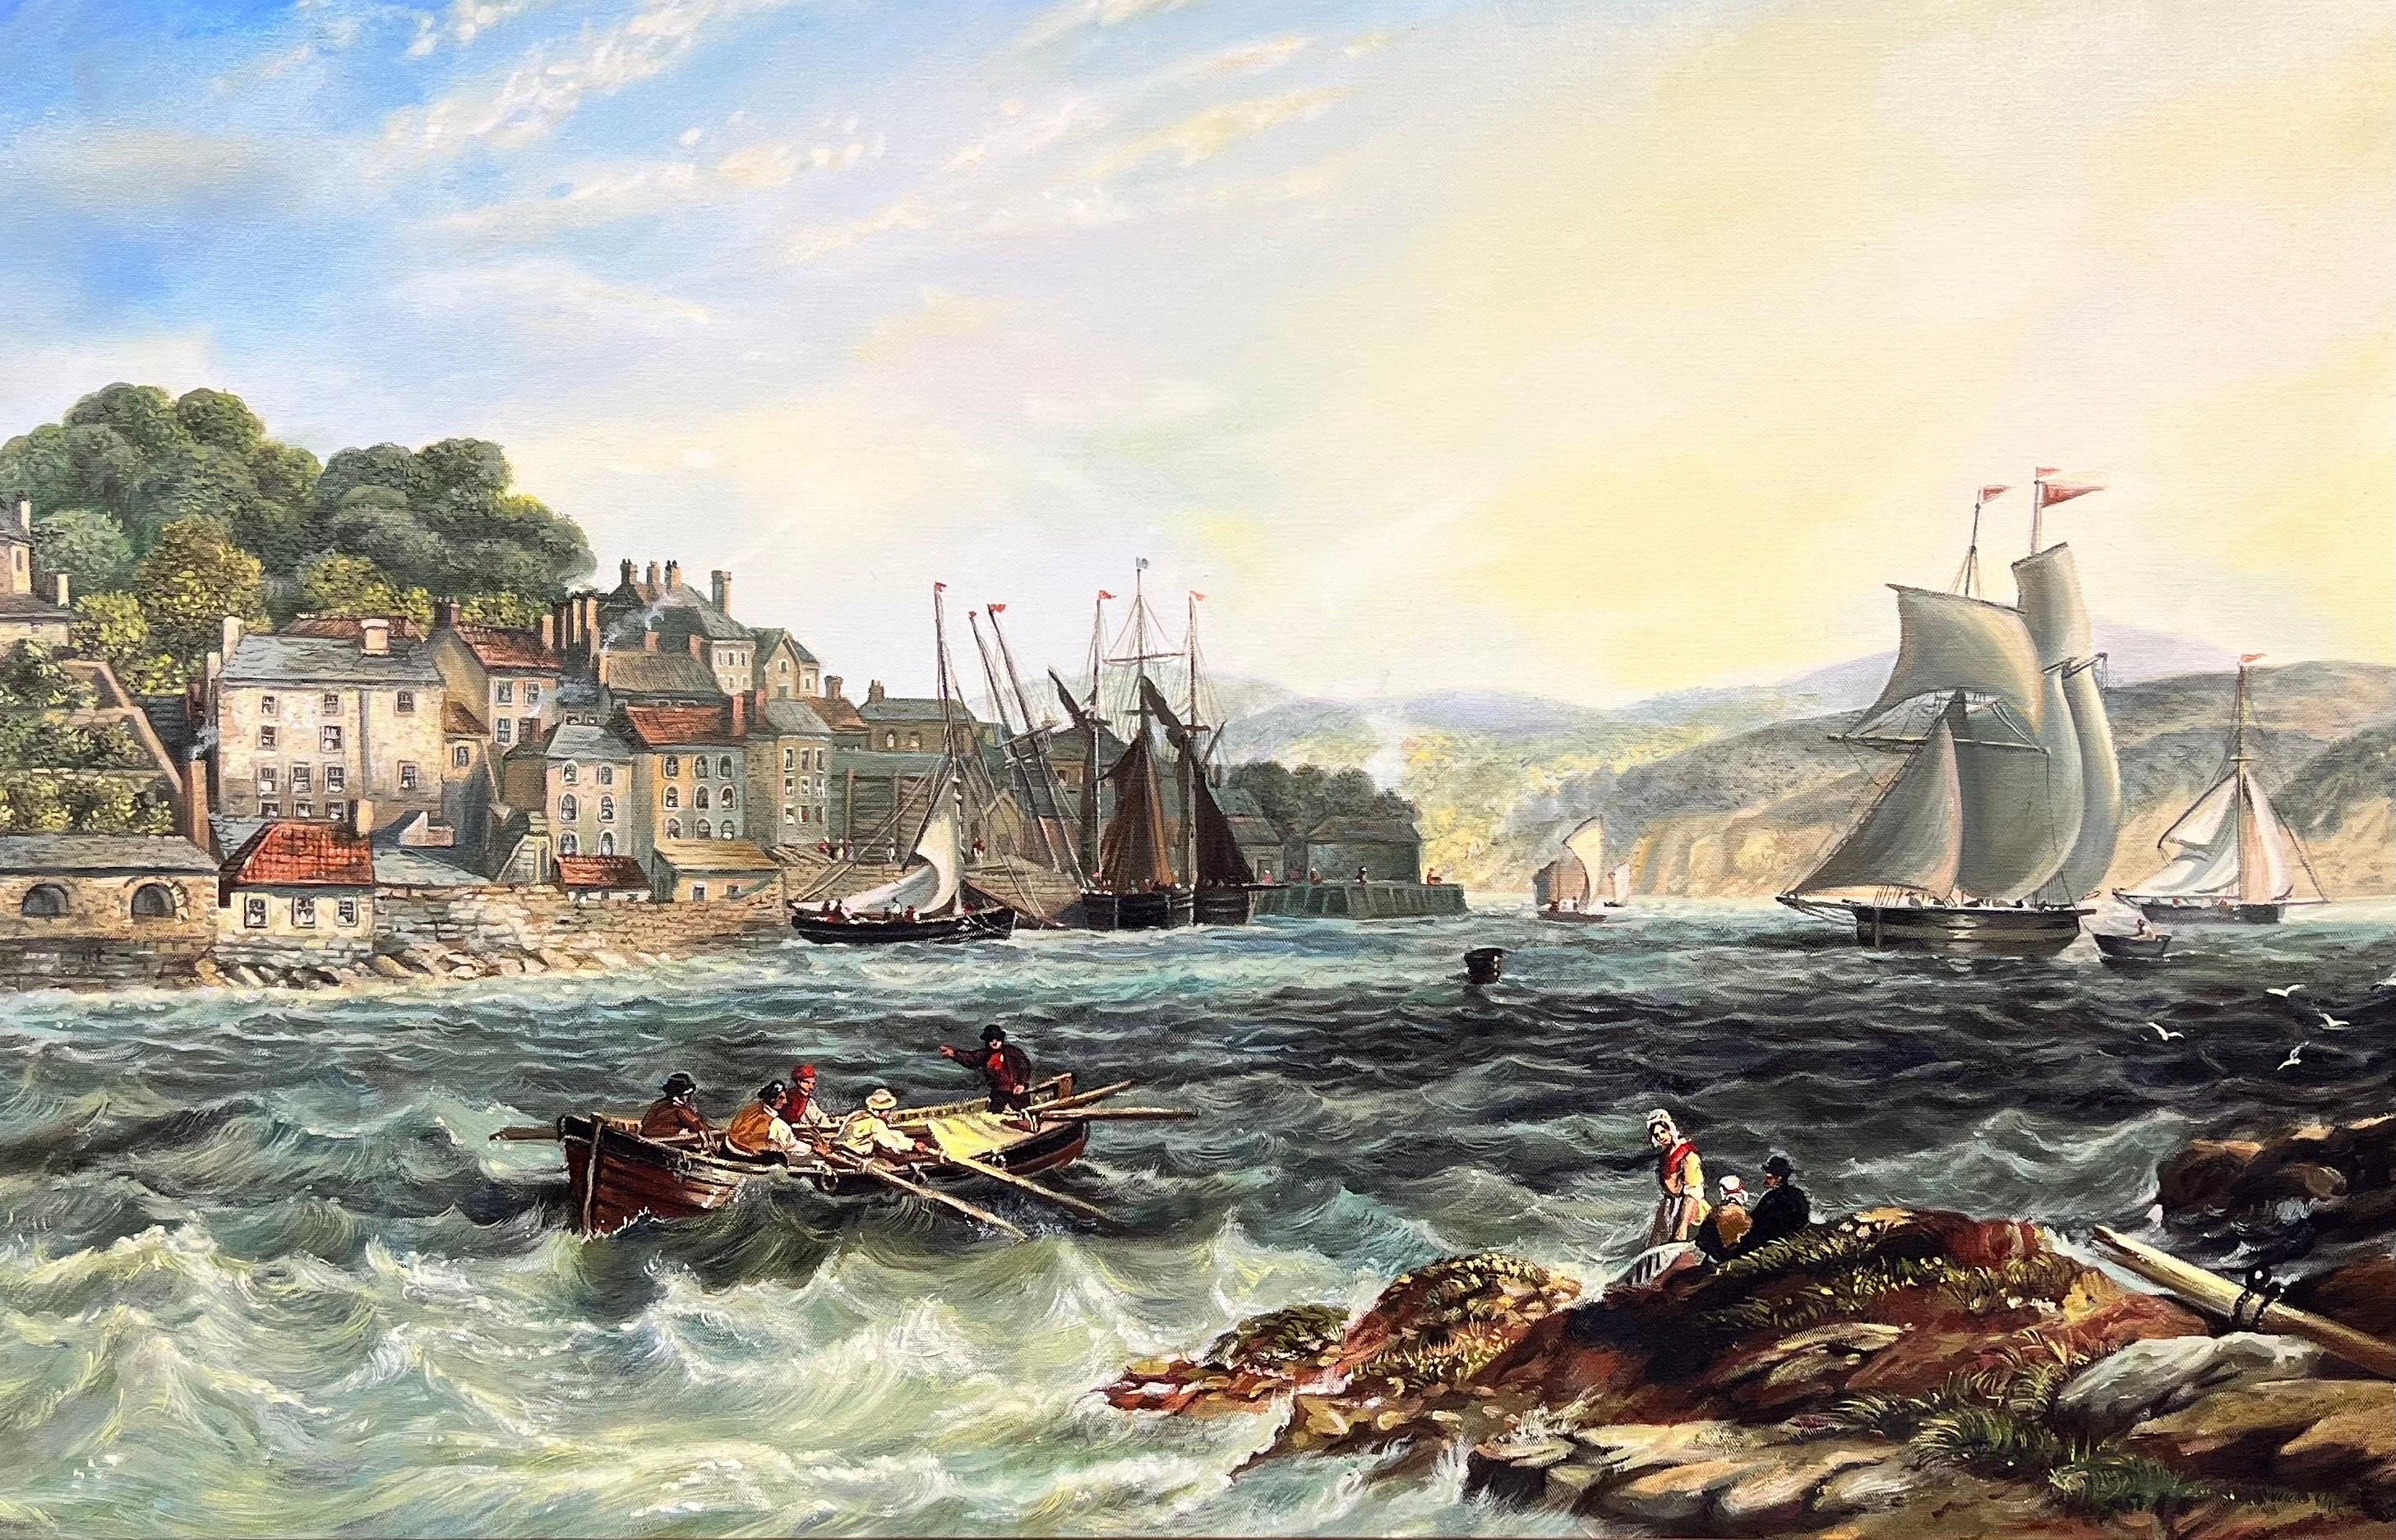 Schönes Ölgemälde der britischen Marine, Segelboote von Old Harbour Entrance & Town – Painting von British marine